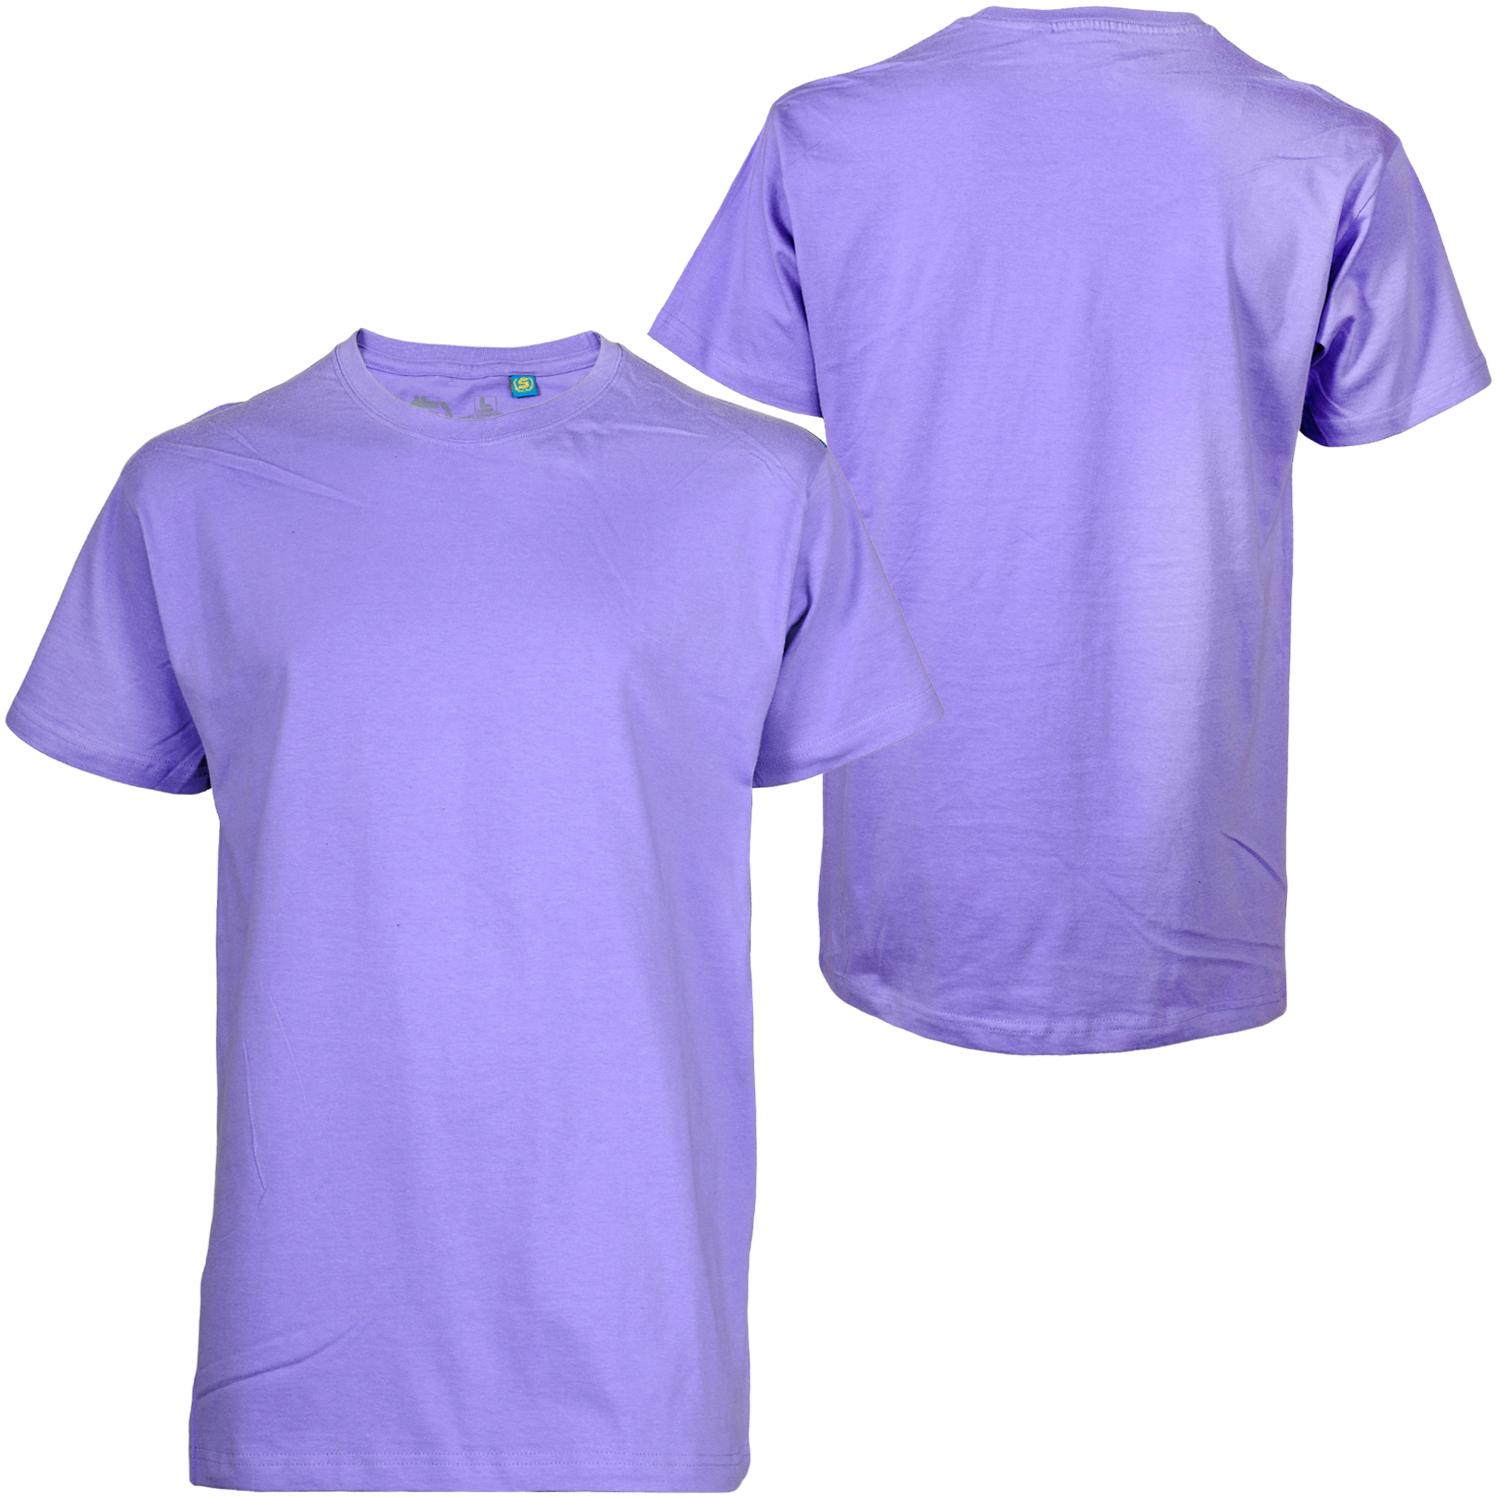 Foto Shmack Shmack Basic T-shirt Lila Camisetas Púrpura foto 232650